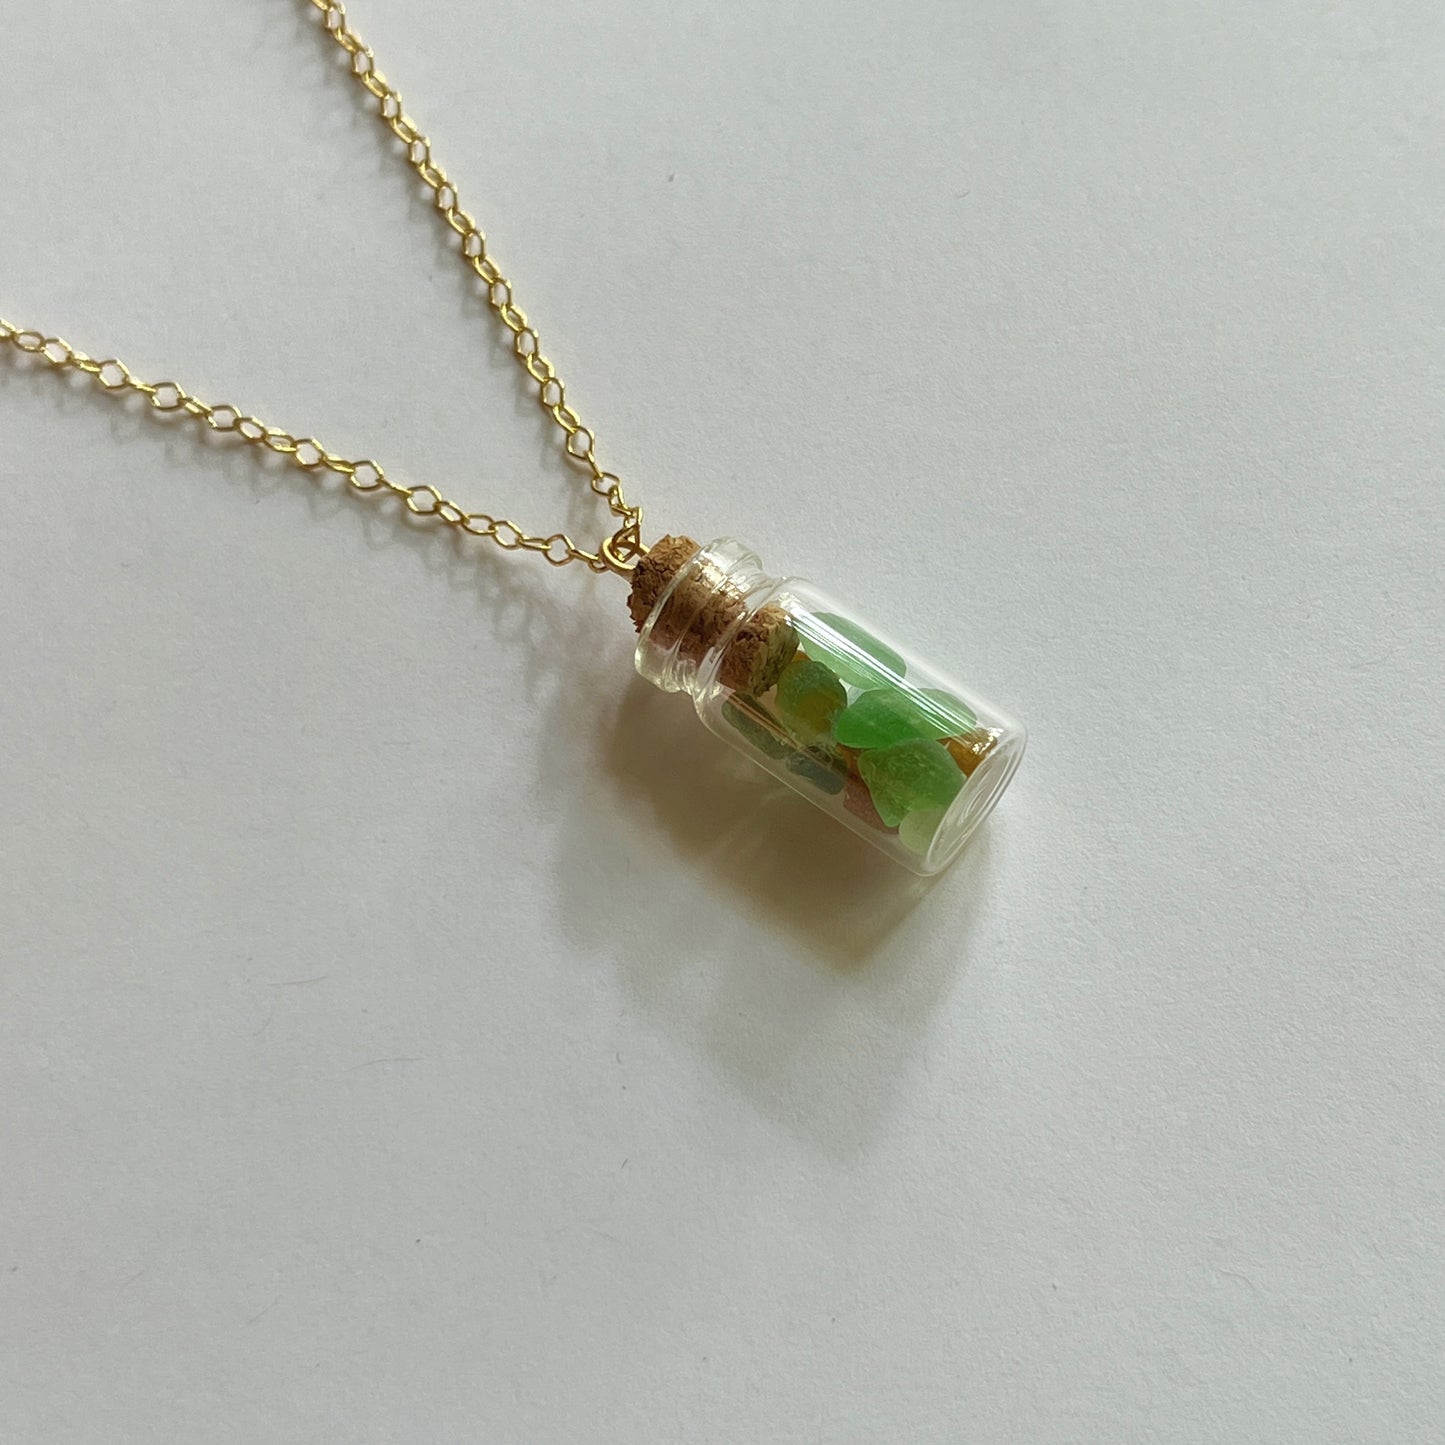 Italian Beach Glass in a Bottle Necklace